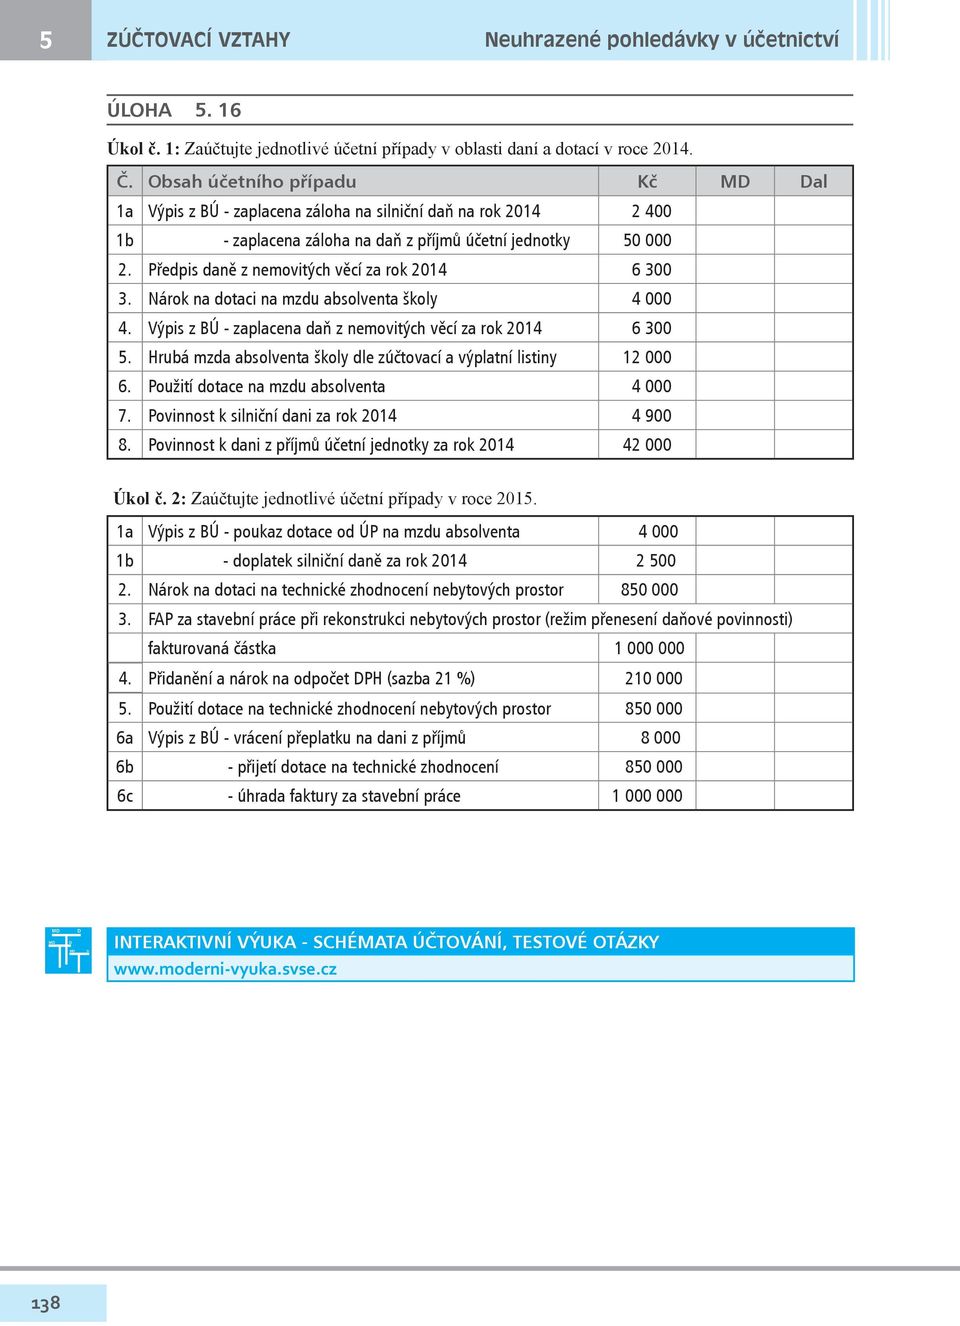 Předpis daně z nemovitých věcí za rok 2014 6 300 3. Nárok na dotaci na mzdu absolventa školy 4 000 4. Výpis z BÚ - zaplacena daň z nemovitých věcí za rok 2014 6 300 5.